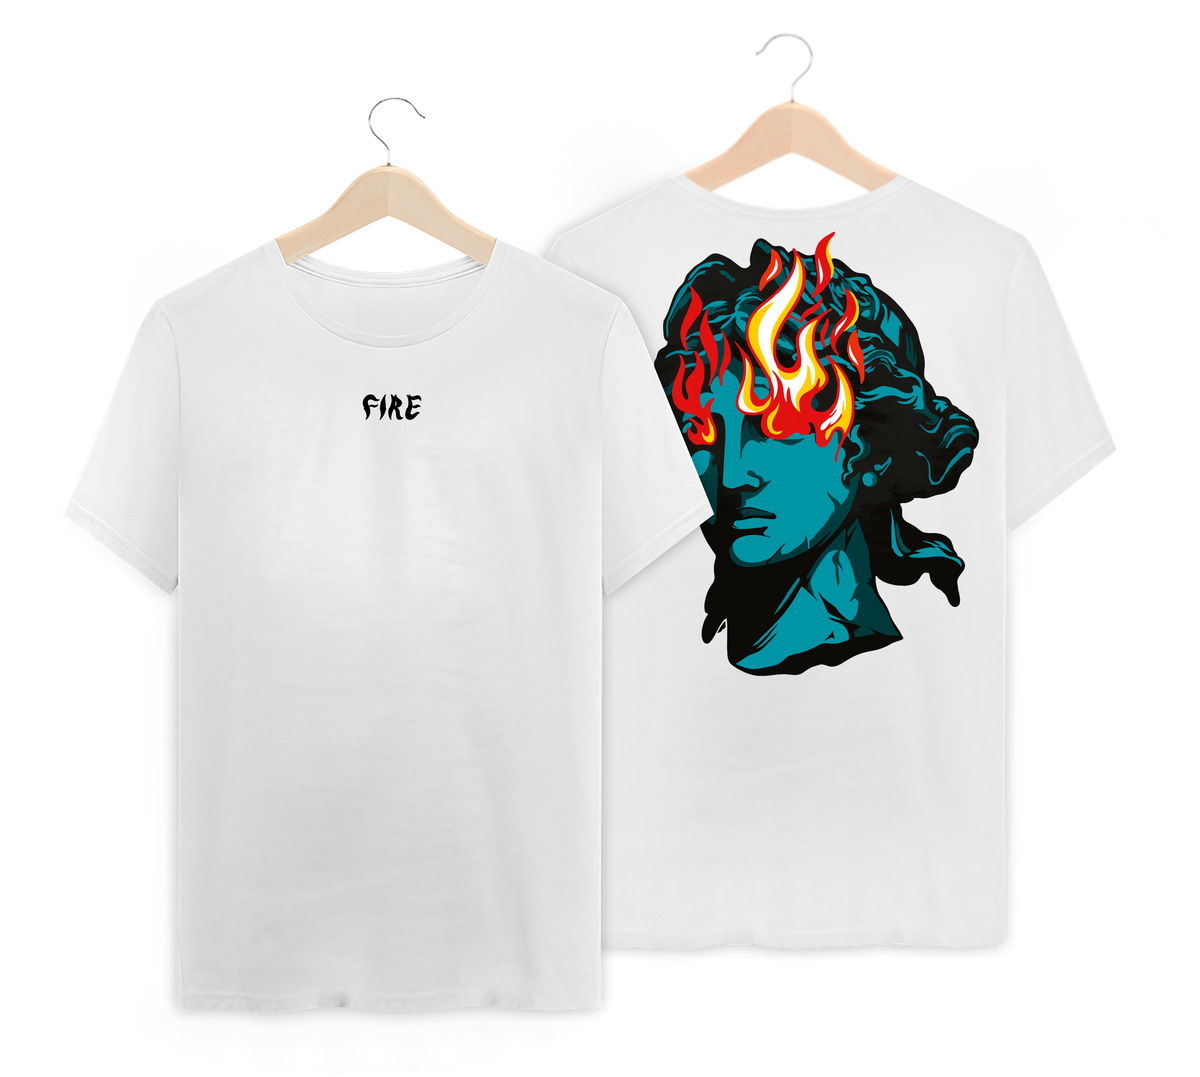 Nome do produto: Camiseta com estampa de uma estatua com fogo saindo dos olhos